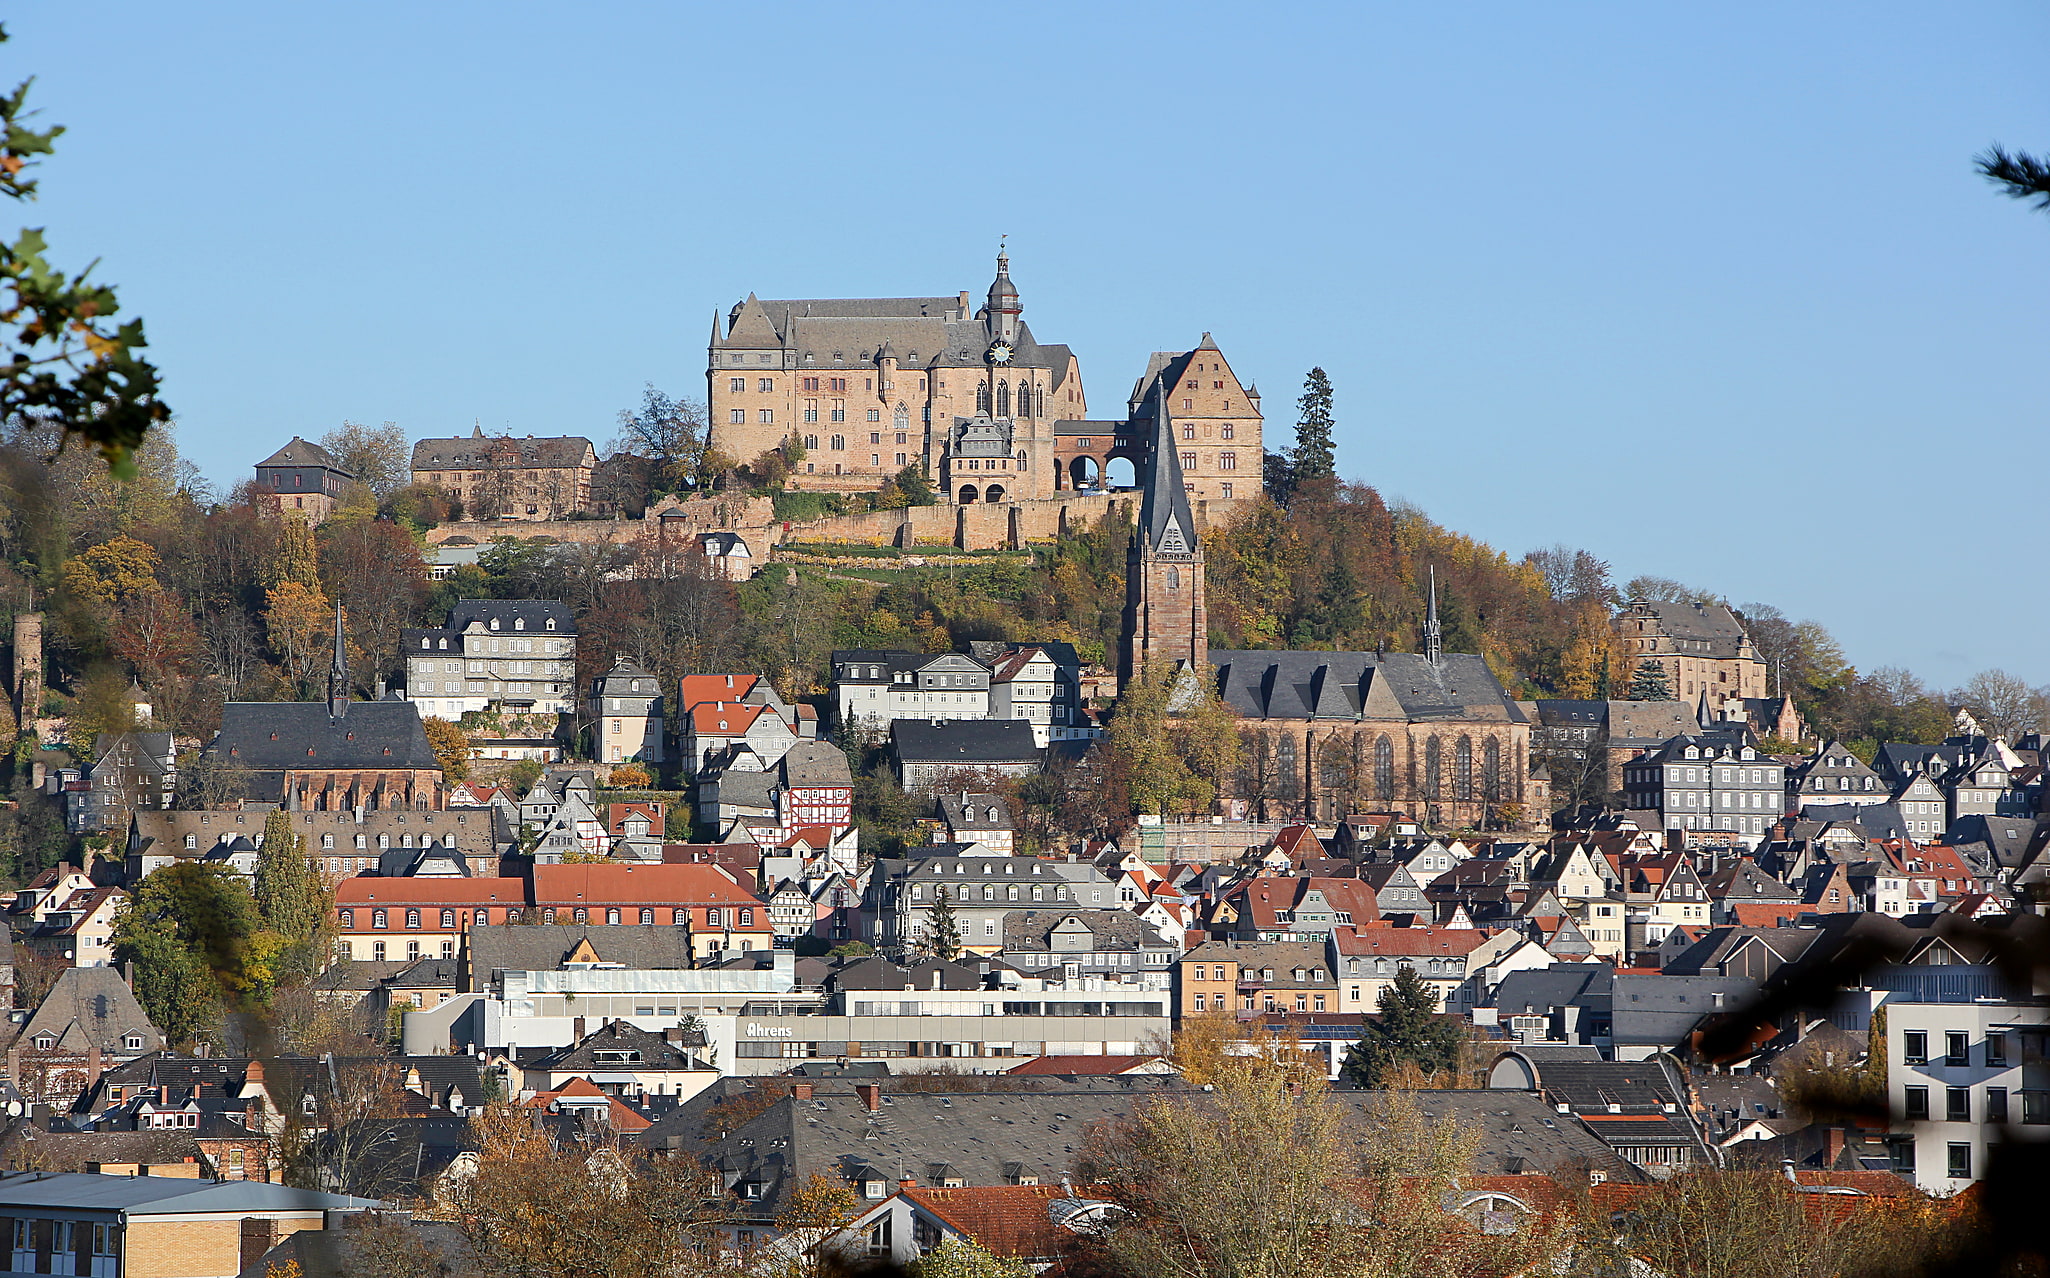 Marburg, Germany